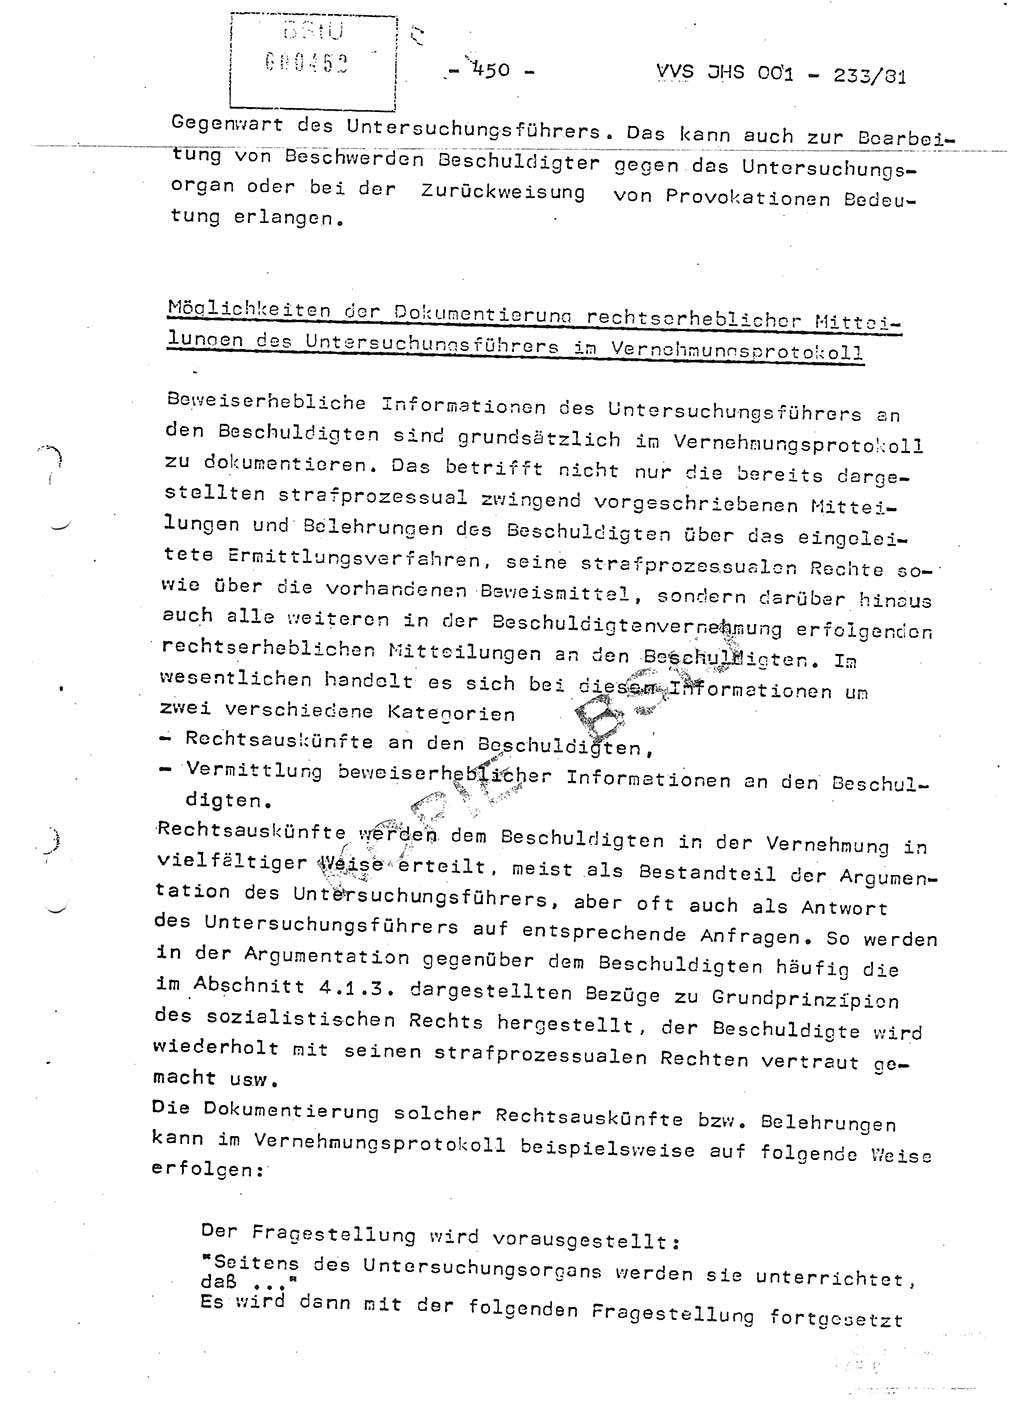 Dissertation Oberstleutnant Horst Zank (JHS), Oberstleutnant Dr. Karl-Heinz Knoblauch (JHS), Oberstleutnant Gustav-Adolf Kowalewski (HA Ⅸ), Oberstleutnant Wolfgang Plötner (HA Ⅸ), Ministerium für Staatssicherheit (MfS) [Deutsche Demokratische Republik (DDR)], Juristische Hochschule (JHS), Vertrauliche Verschlußsache (VVS) o001-233/81, Potsdam 1981, Blatt 450 (Diss. MfS DDR JHS VVS o001-233/81 1981, Bl. 450)